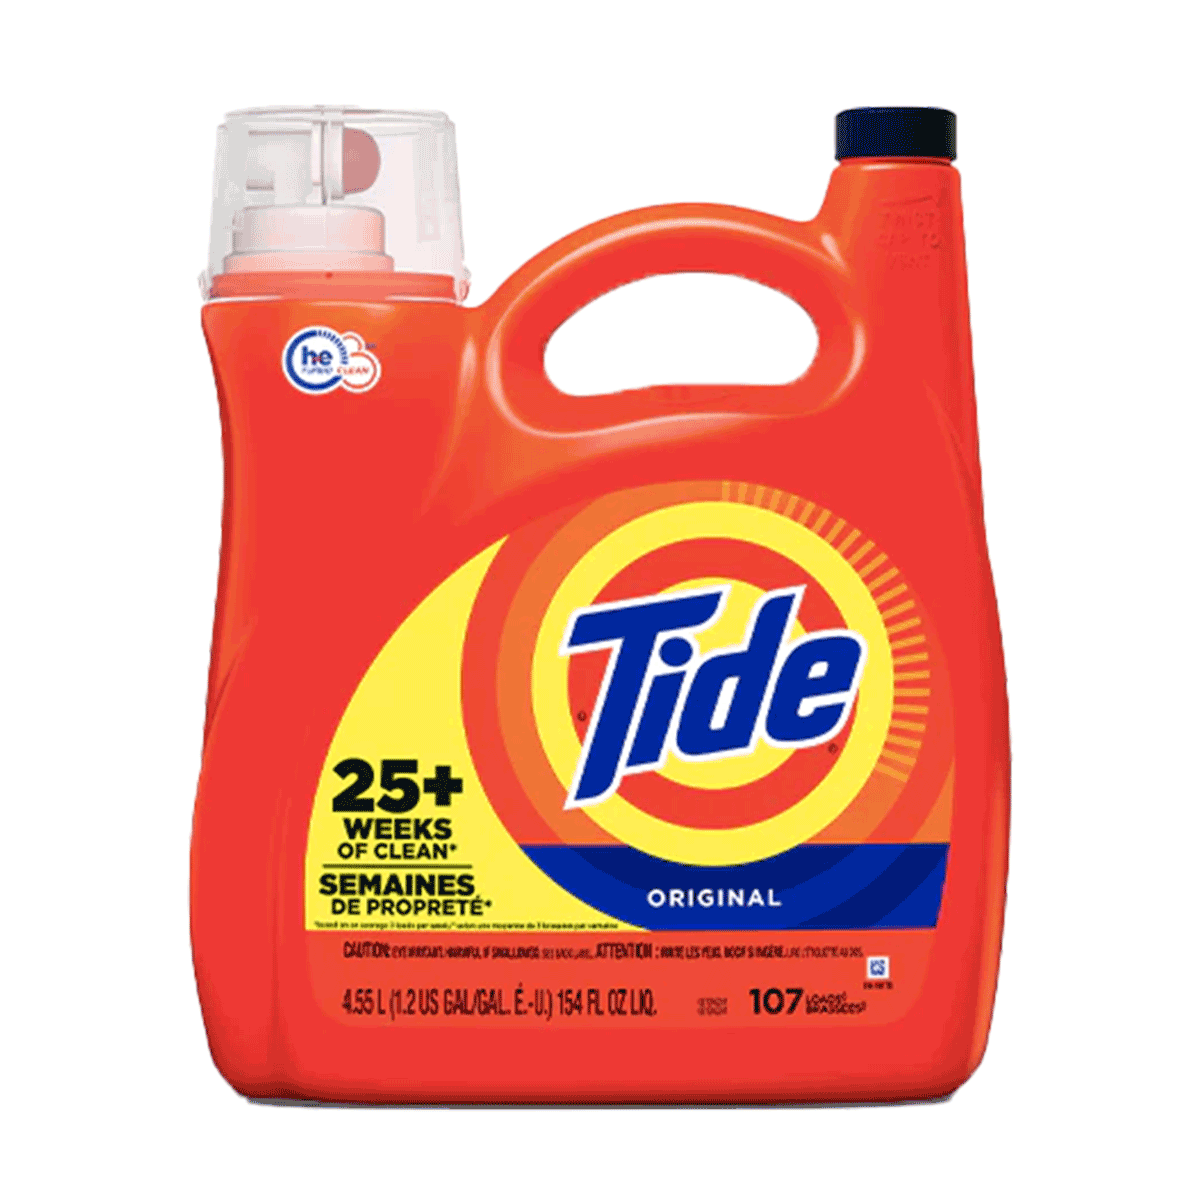 Detergente líquido concentrado para ropa Tide Original 4,55 litros (107 cargas)